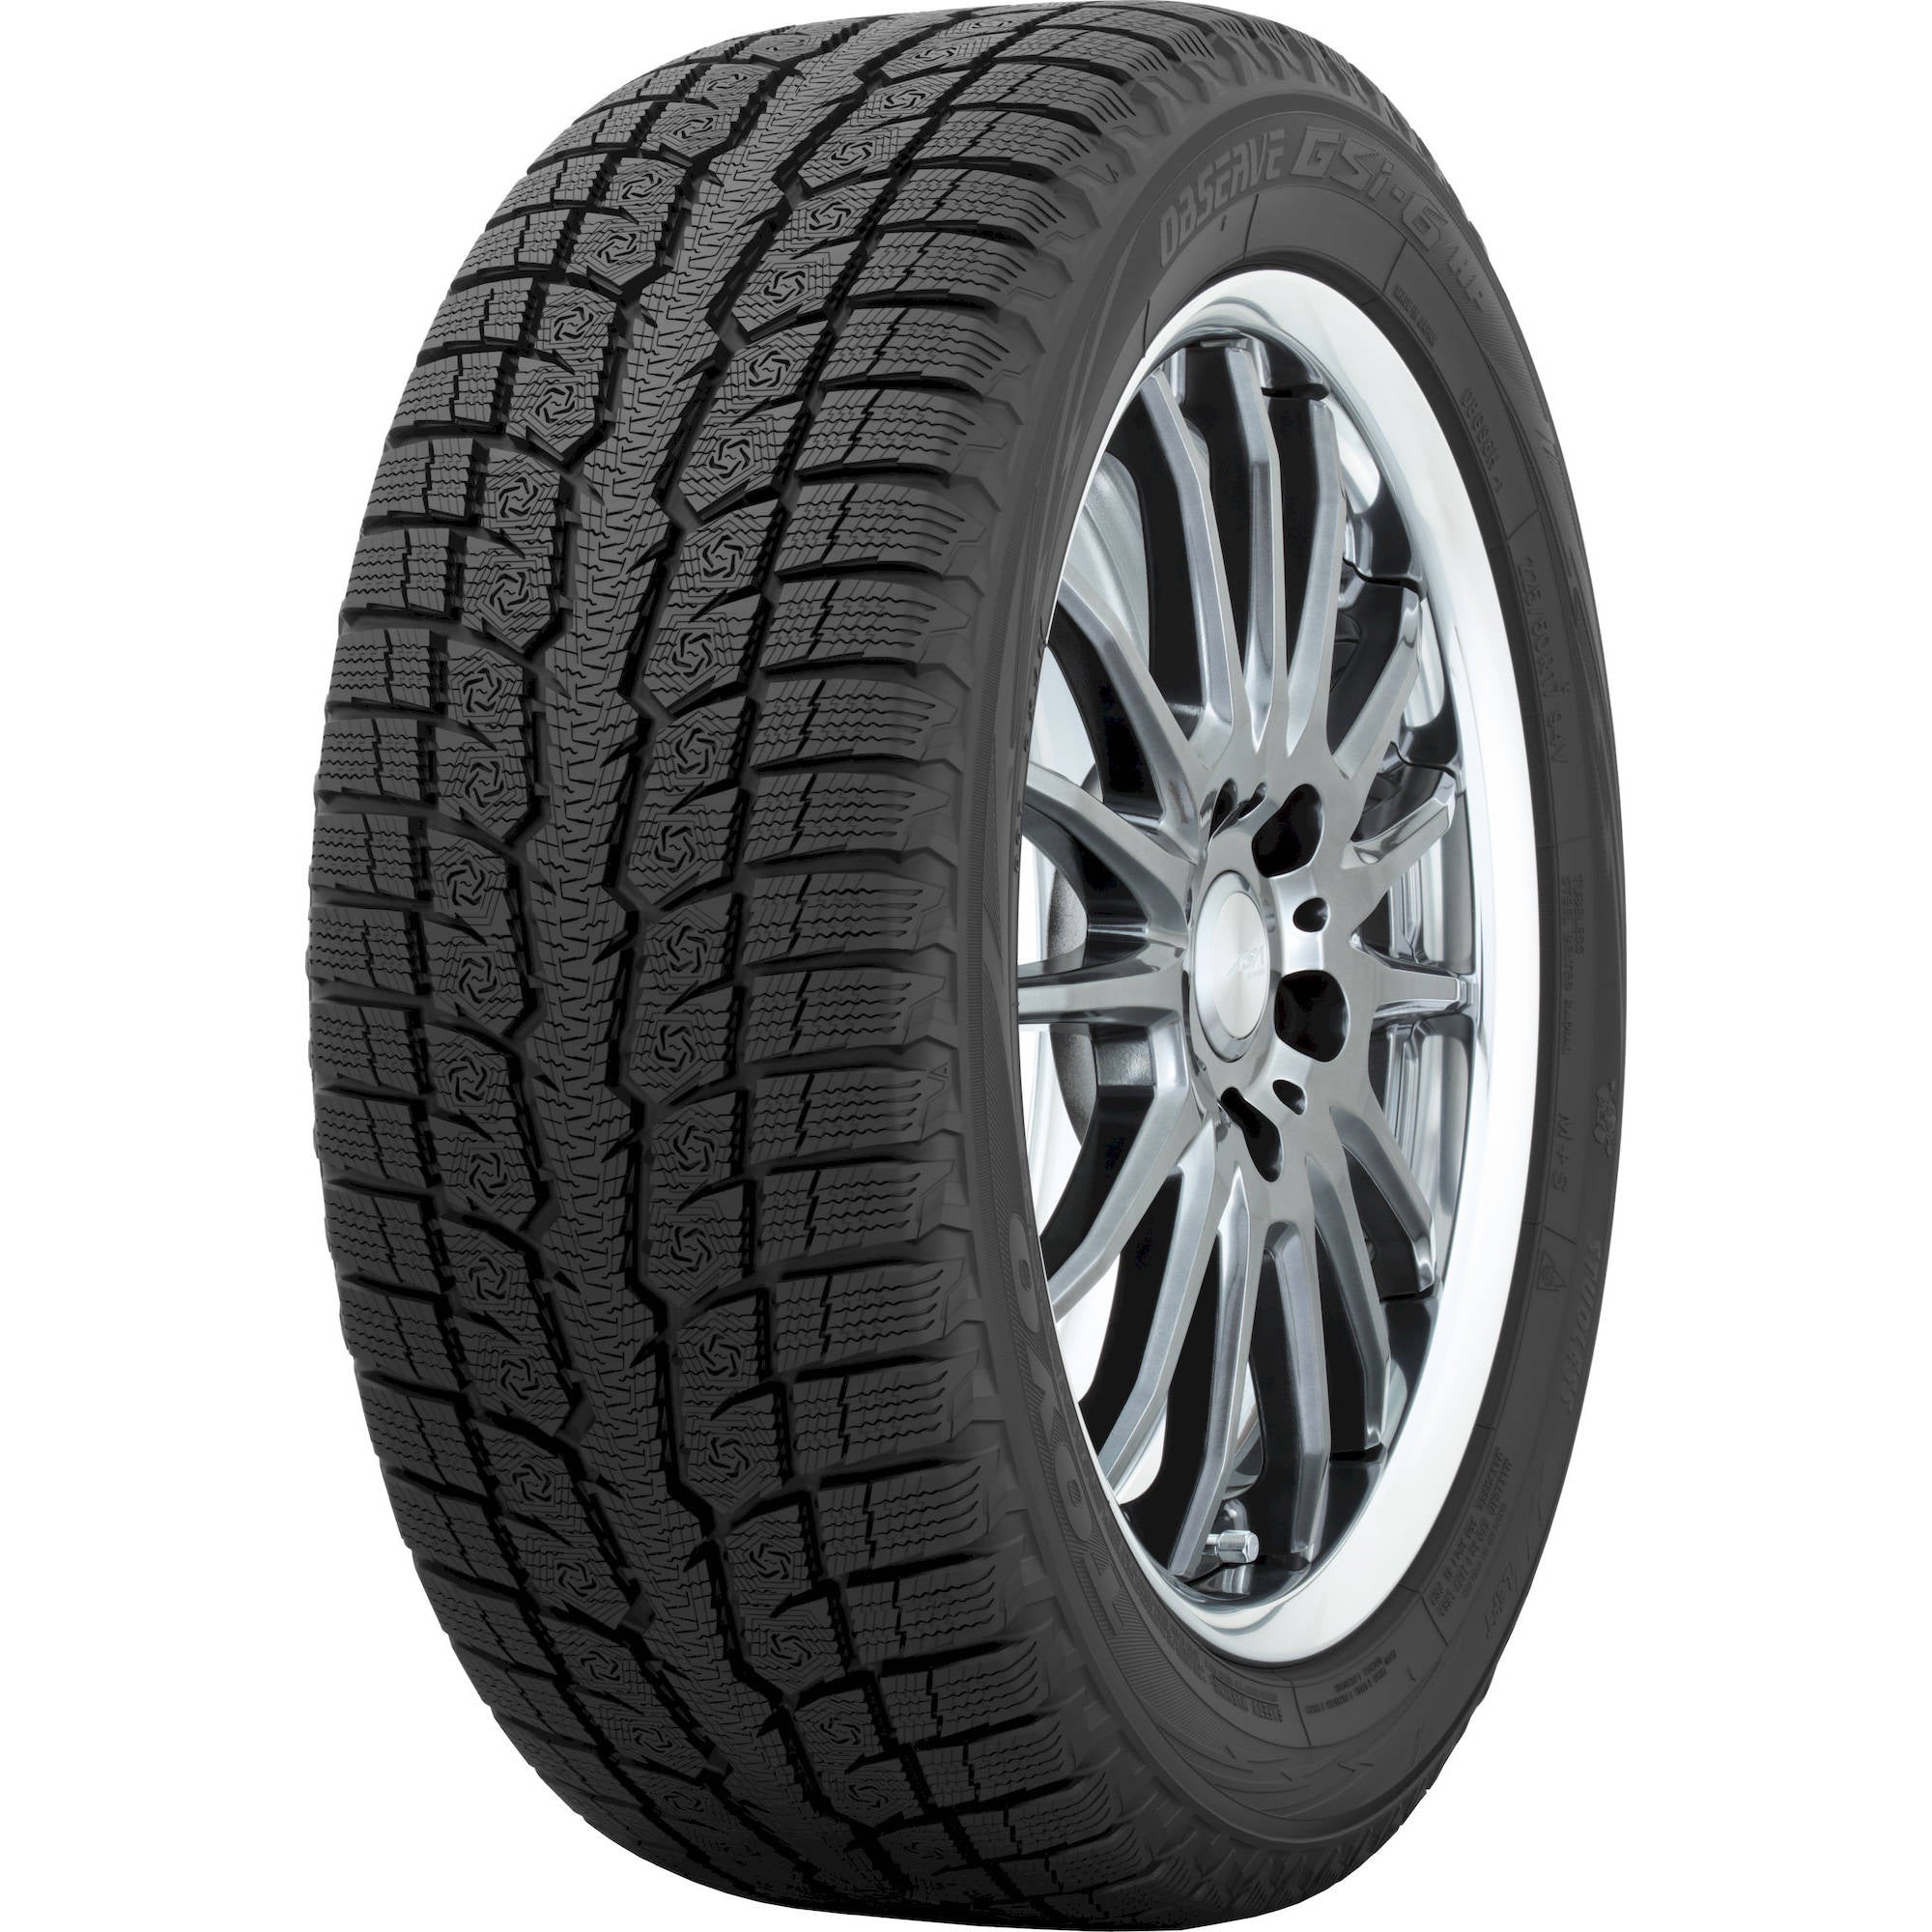 TOYO TIRES OBSERVE GSI-6 205/65R16 (26.5X8.1R 16) Tires